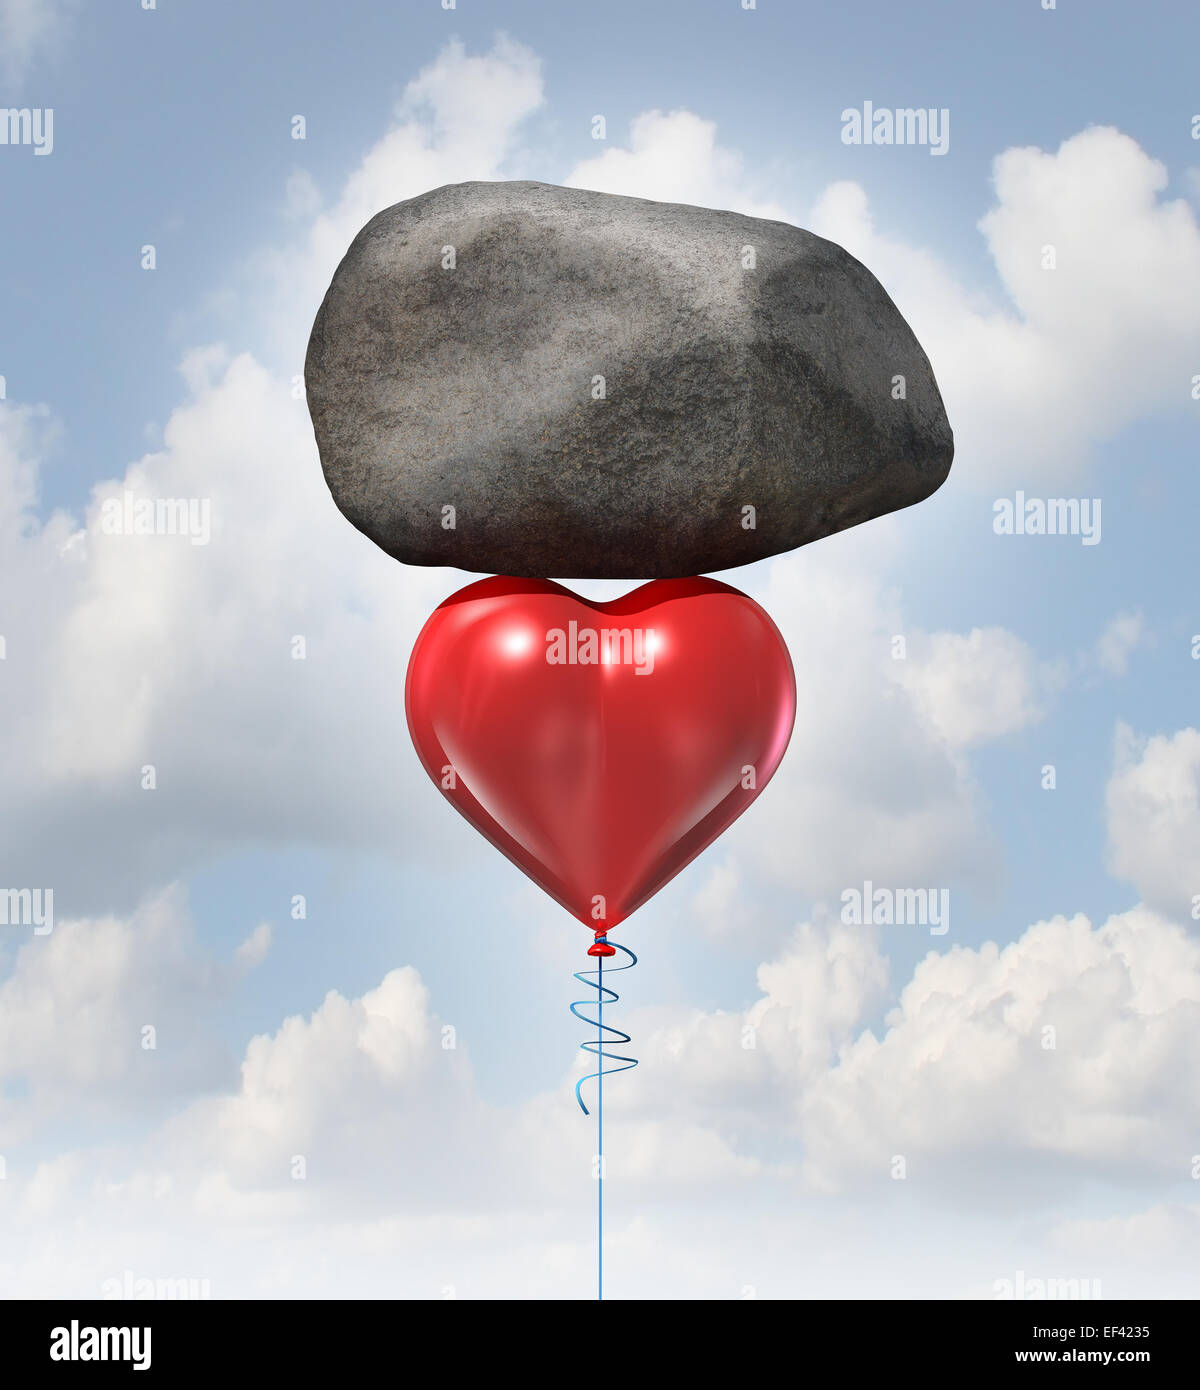 Macht der Liebe Metapher oder schweren Herzens Herausforderung Konzept als einen roten Ballon geformt als Symbol für Romantik und Beziehungen Aufzug Stockfoto